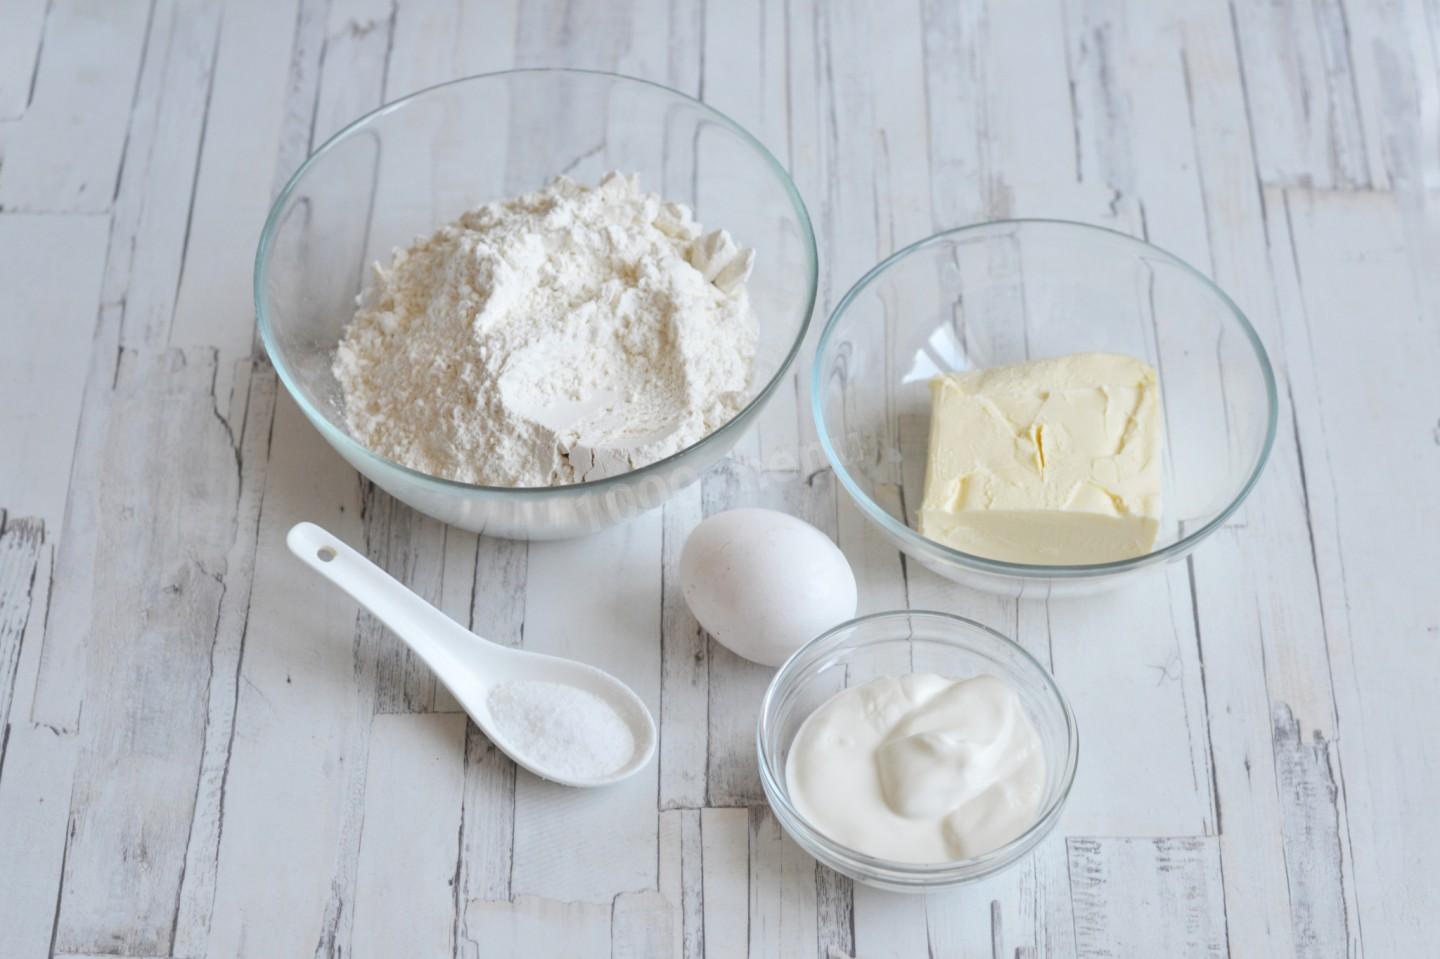 Рецепт теста сливками. Из яиц, молока, муки, сливочного масла в духовке. Сметана в духовке называется. Сливки без соли.